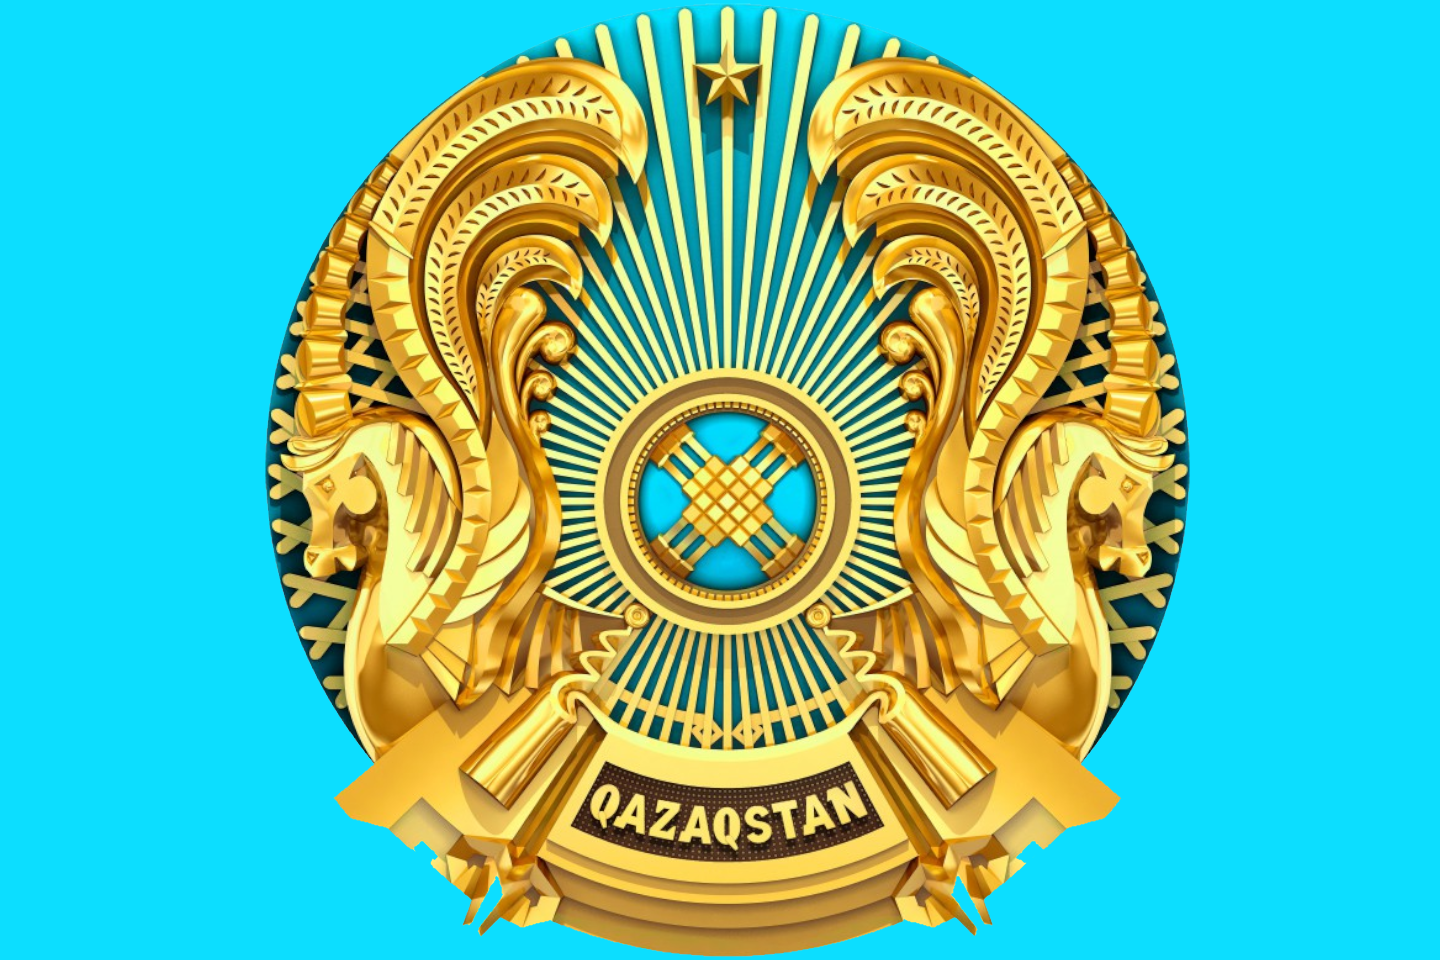 Новости Казахстана / Общество в Казахстане / В Казахстане предложили обсудить изменение герба в парламенте